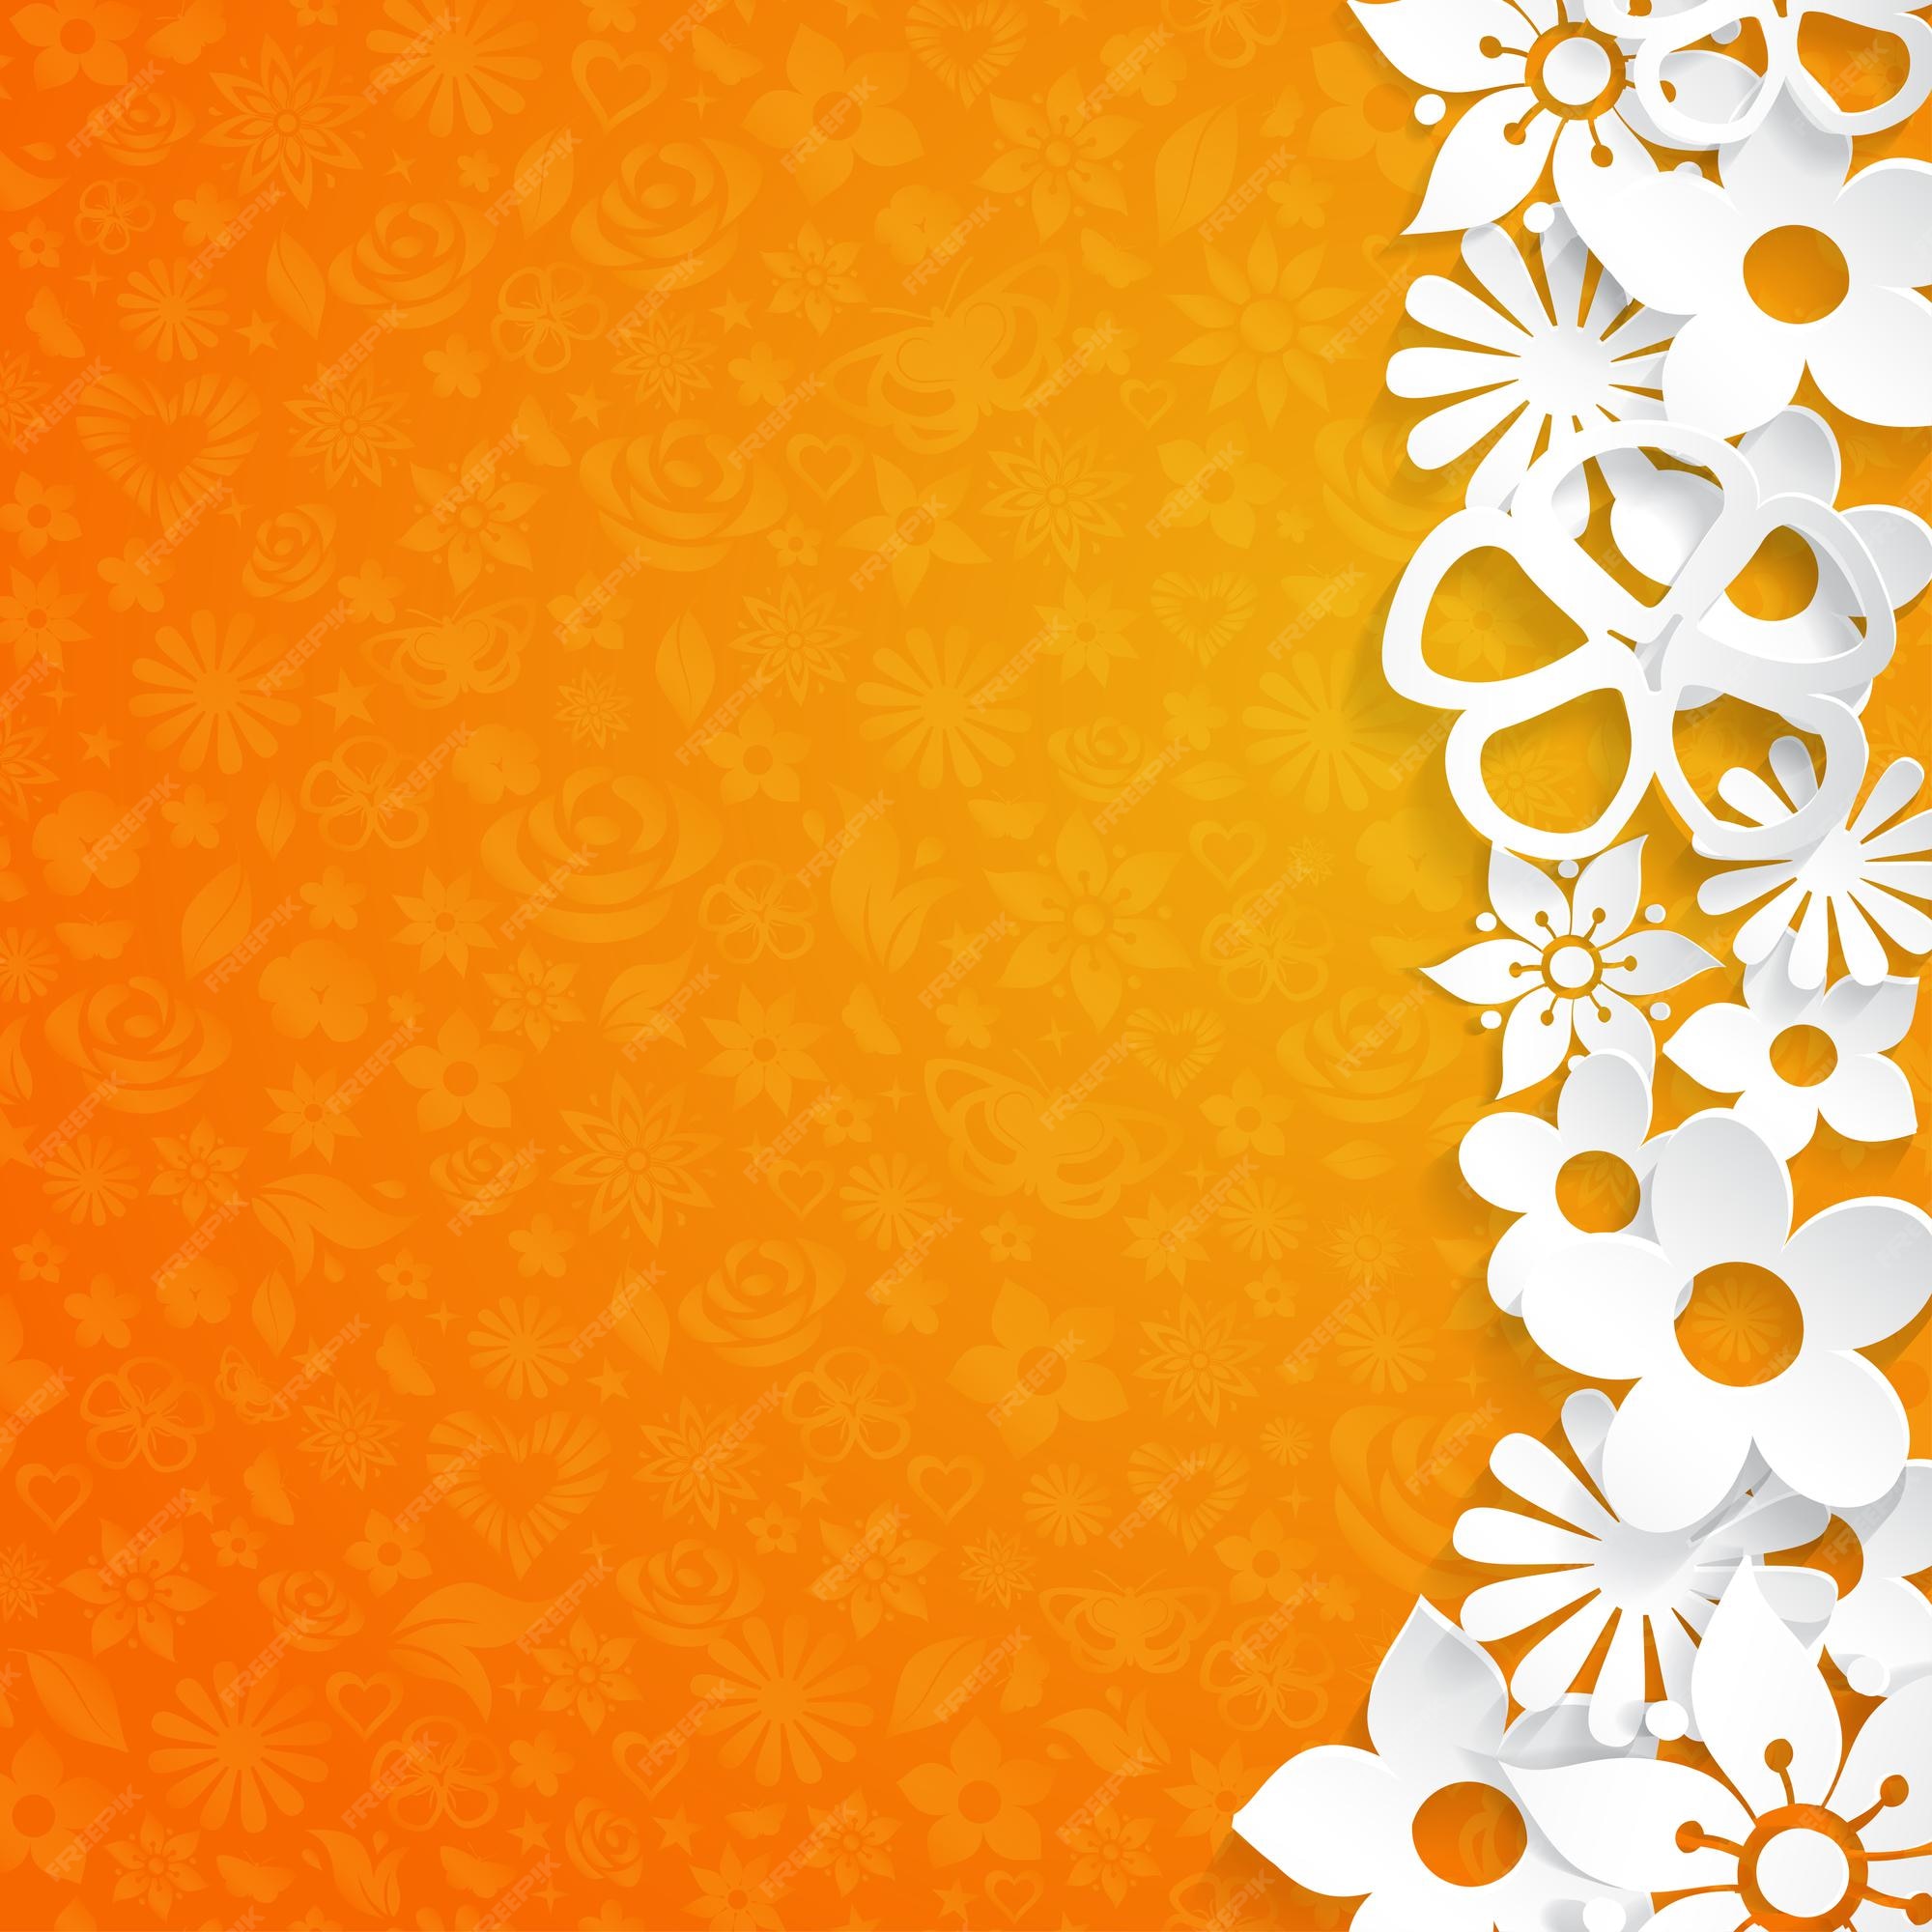 Hãy tận hưởng các Vector cao cấp cùng với hình ảnh nền cam và hoa được cắt ra từ giấy trắng đầy nhẹ nhàng và đẹp mắt. Điểm nhấn của hình ảnh này chắc chắn sẽ làm bạn say mê. Xem ảnh liên quan ngay để tận hưởng.